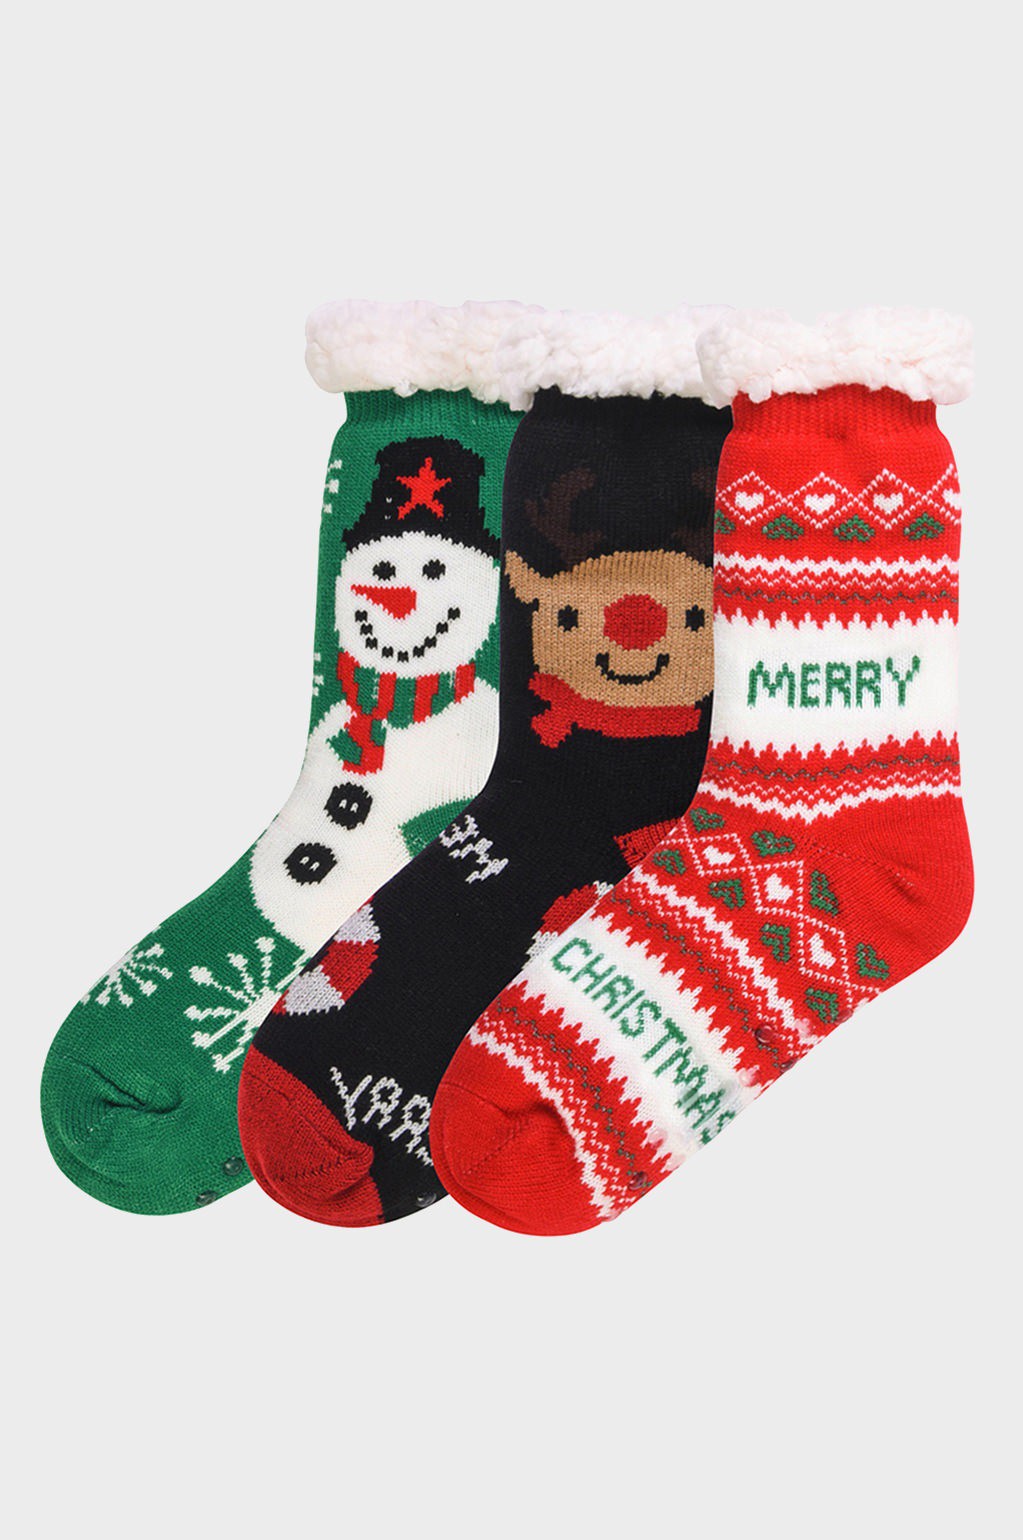 Kids Sherpa Lined Winter Socks 10/24/23 7236